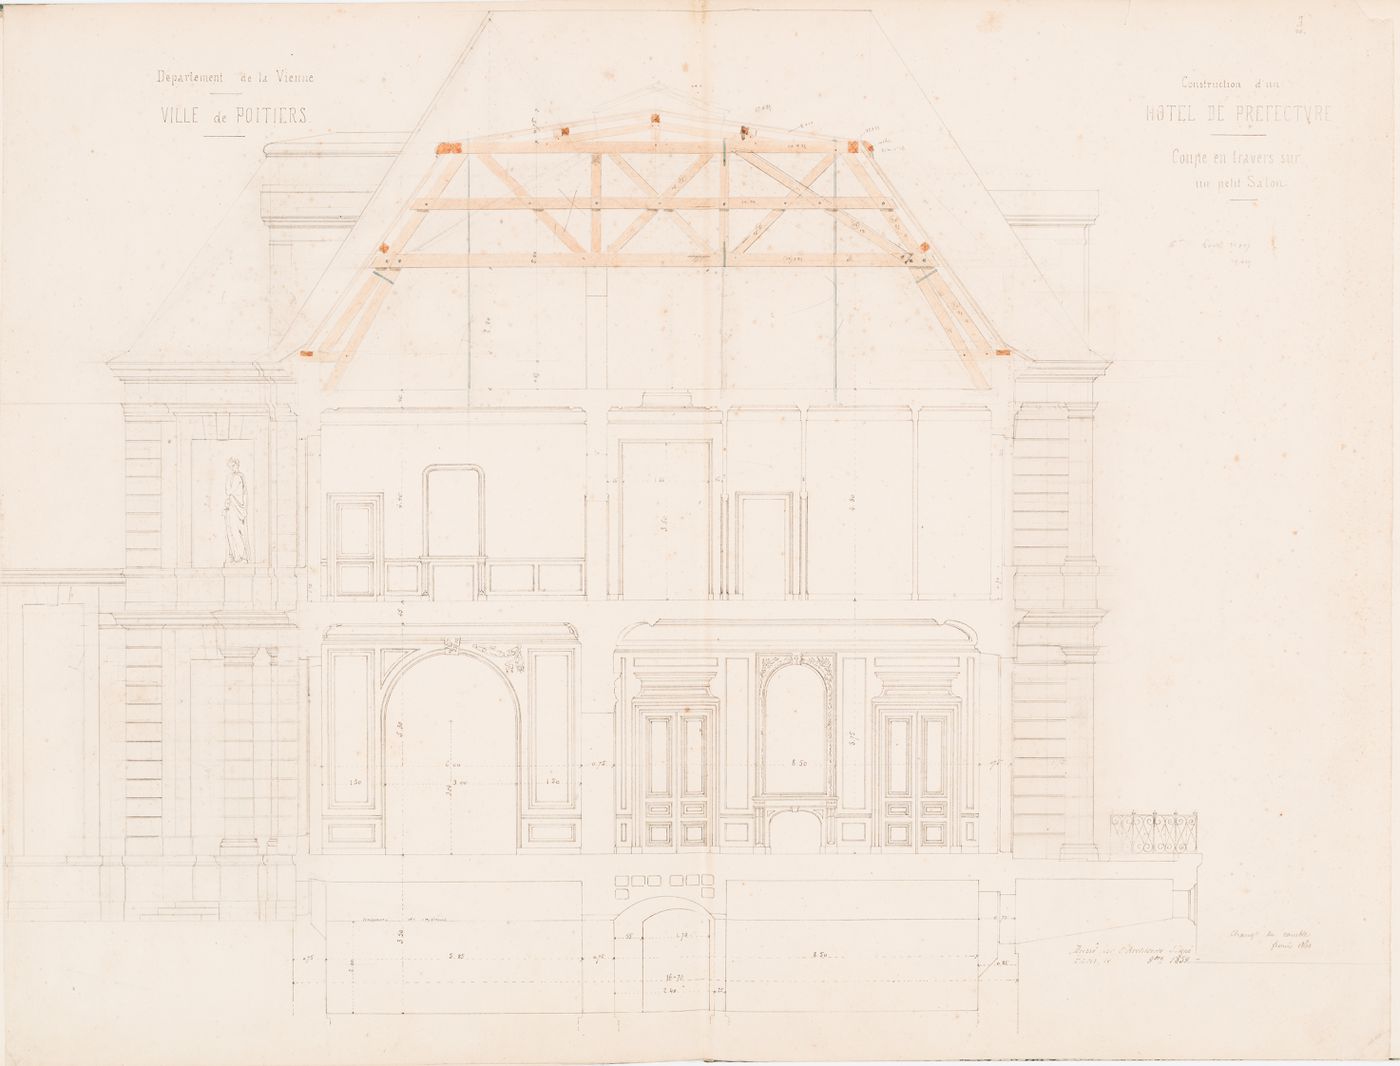 Project for a Hôtel de préfecture, Poitiers: Cross section through "un petit salon" for the Hôtel du Préfet showing the roof trusses